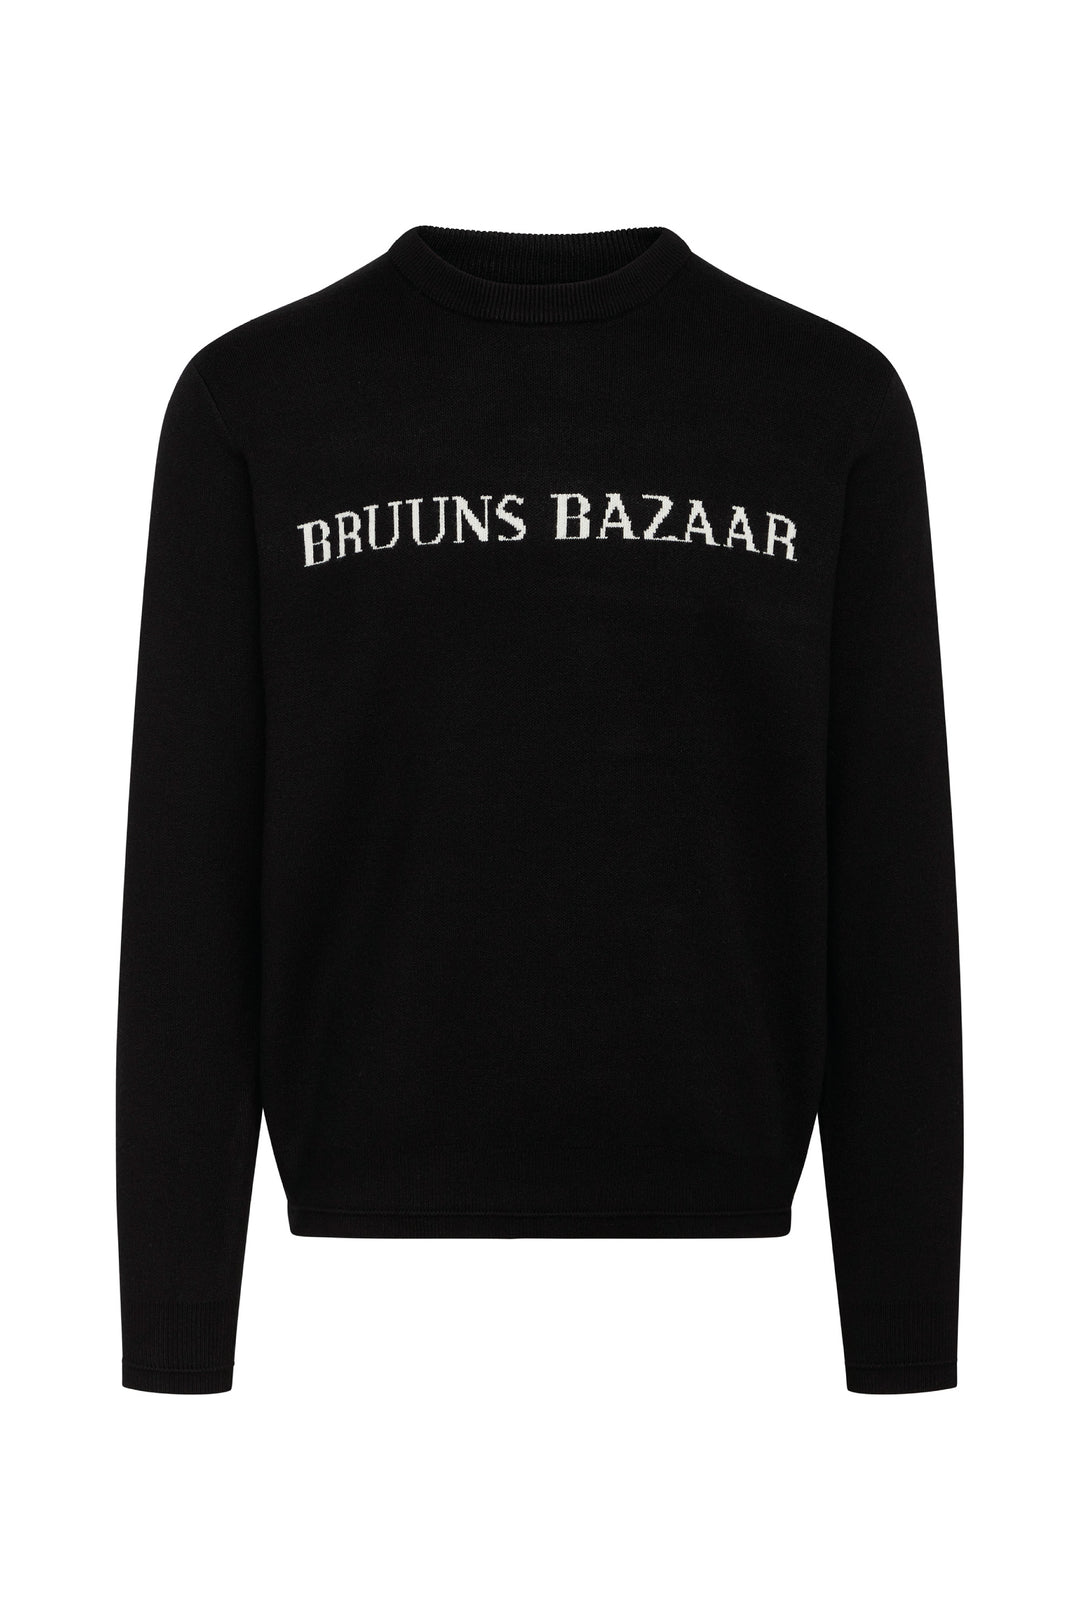 Bruuns Bazaar Men SimonBBNouveau knit Knit Black